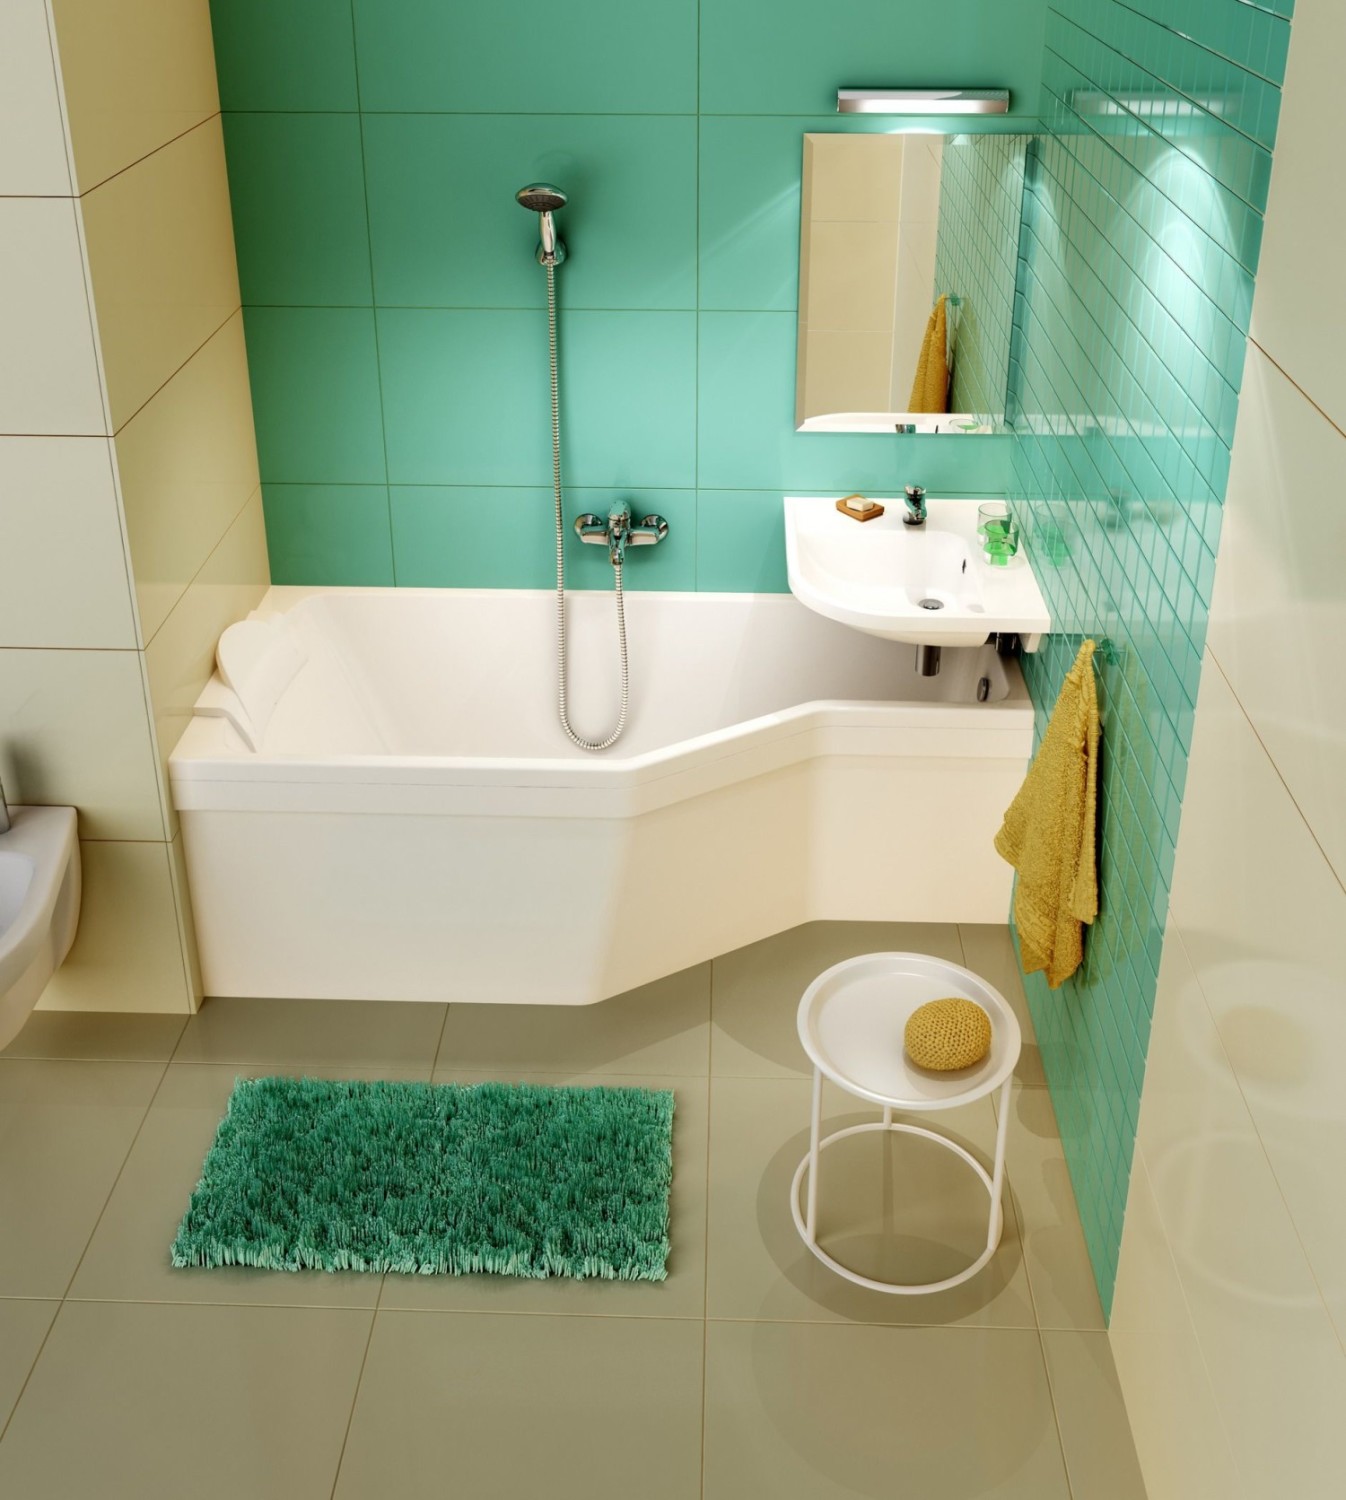 Μπεζ, λευκά και πράσινα χρώματα στο εσωτερικό του μπάνιου.